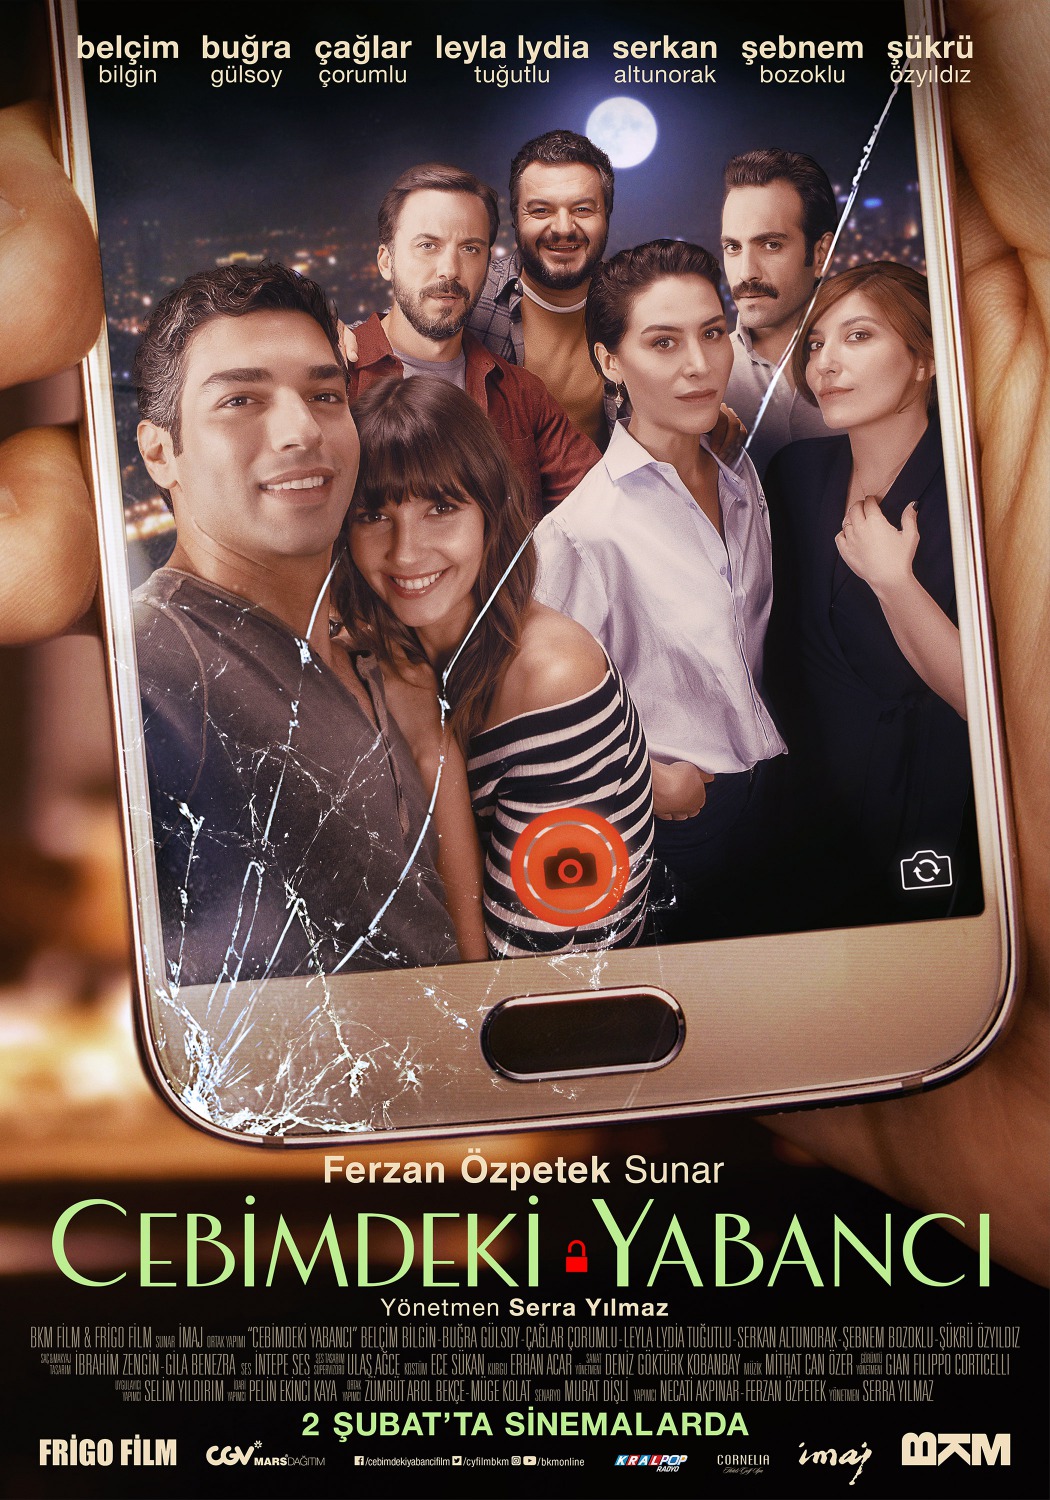 Extra Large Movie Poster Image for Cebimdeki Yabancı (#2 of 10)